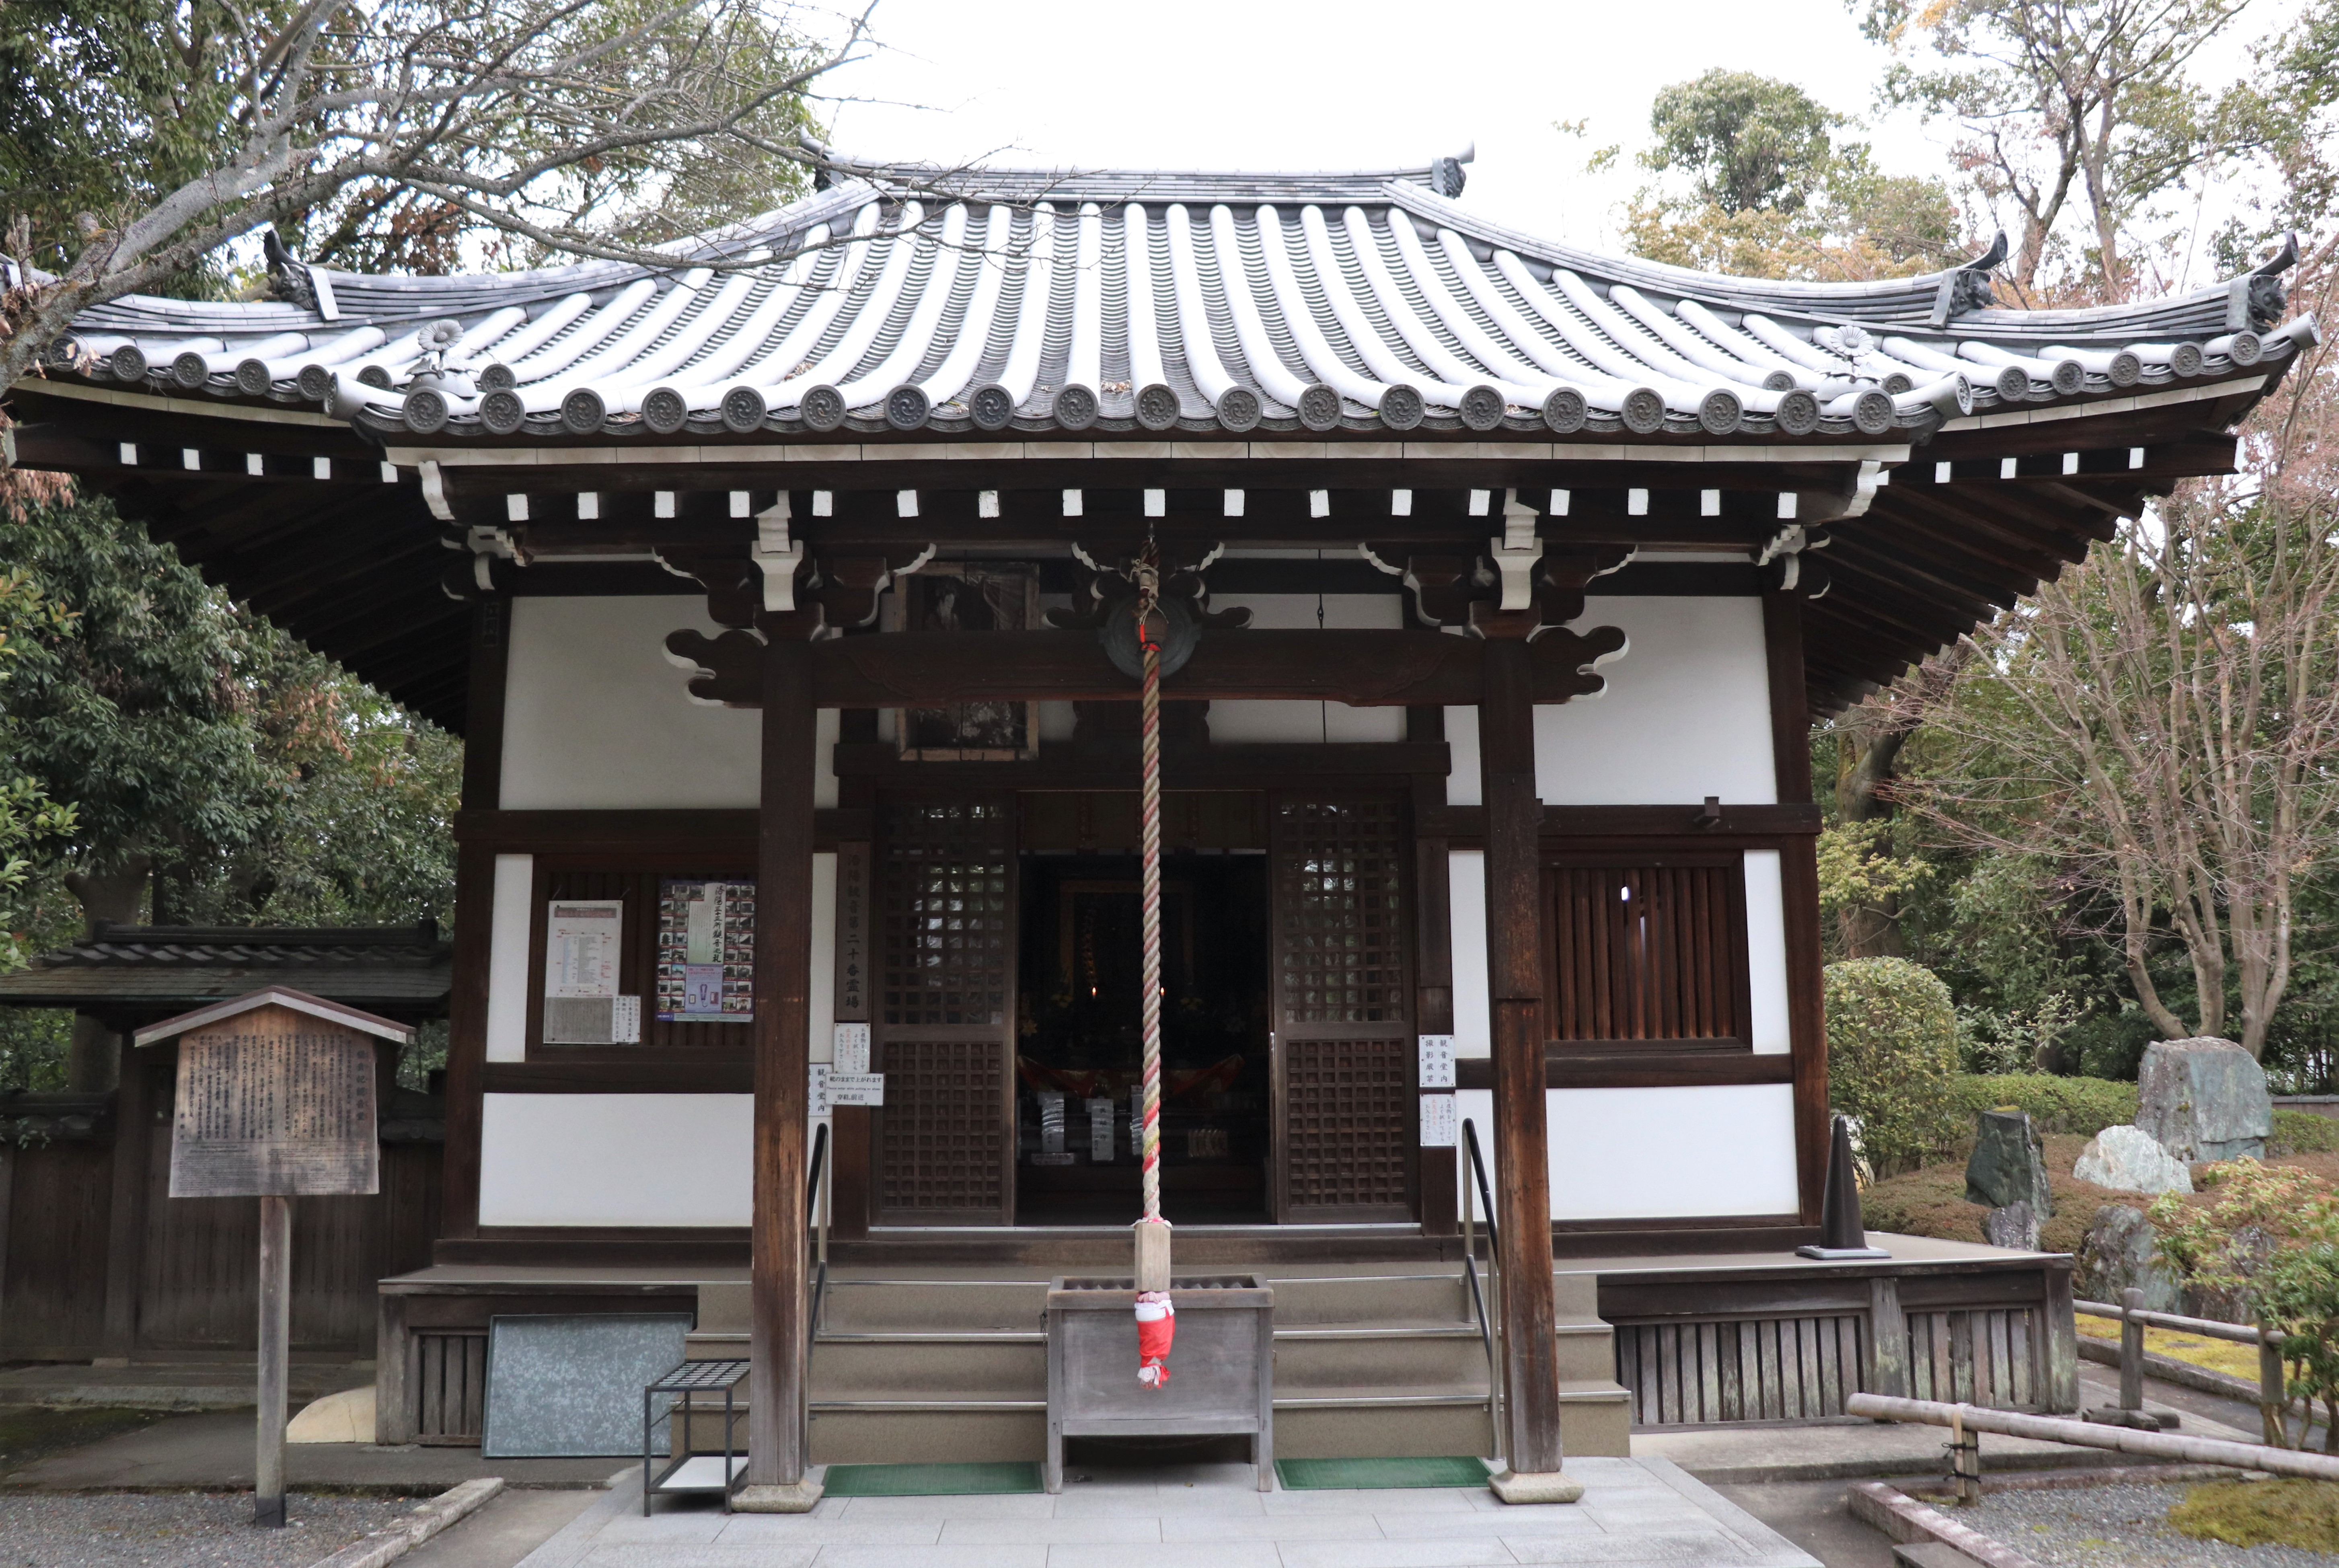 Yokihi Kannno-do of sennyu-ji temple